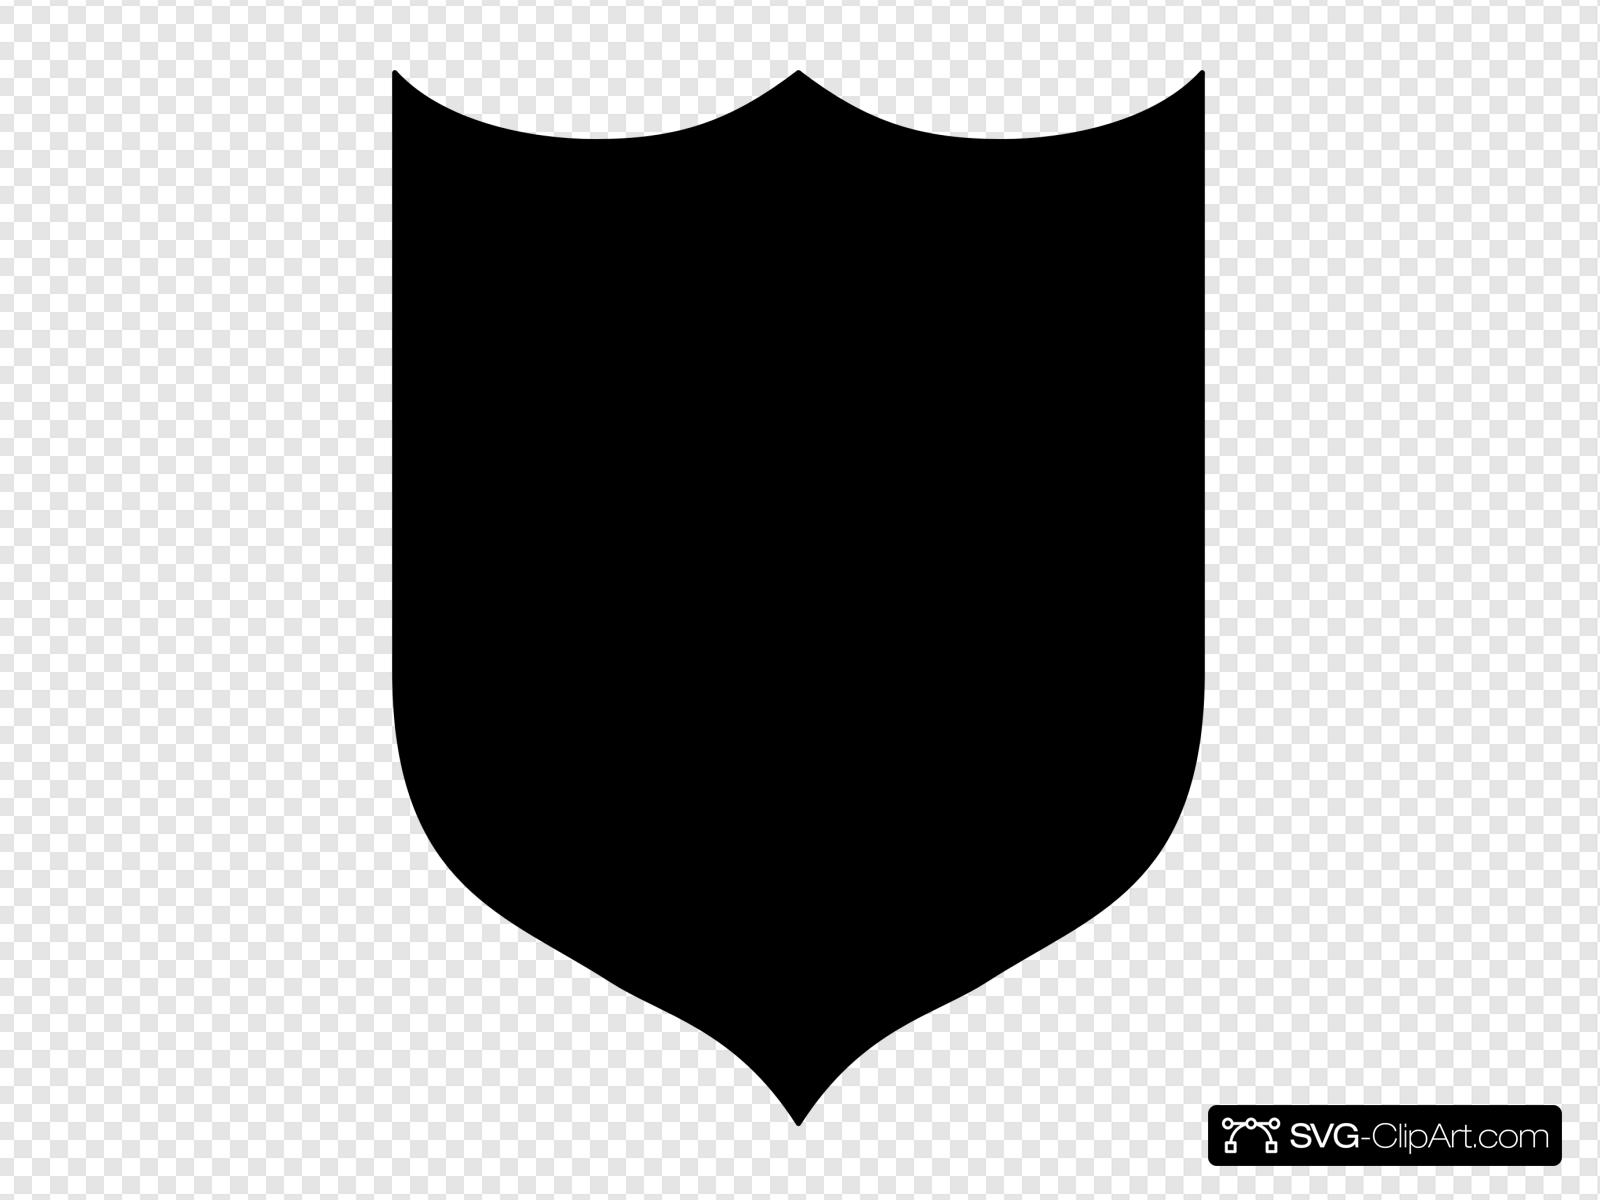 Black Shield Clip art, Icon and SVG